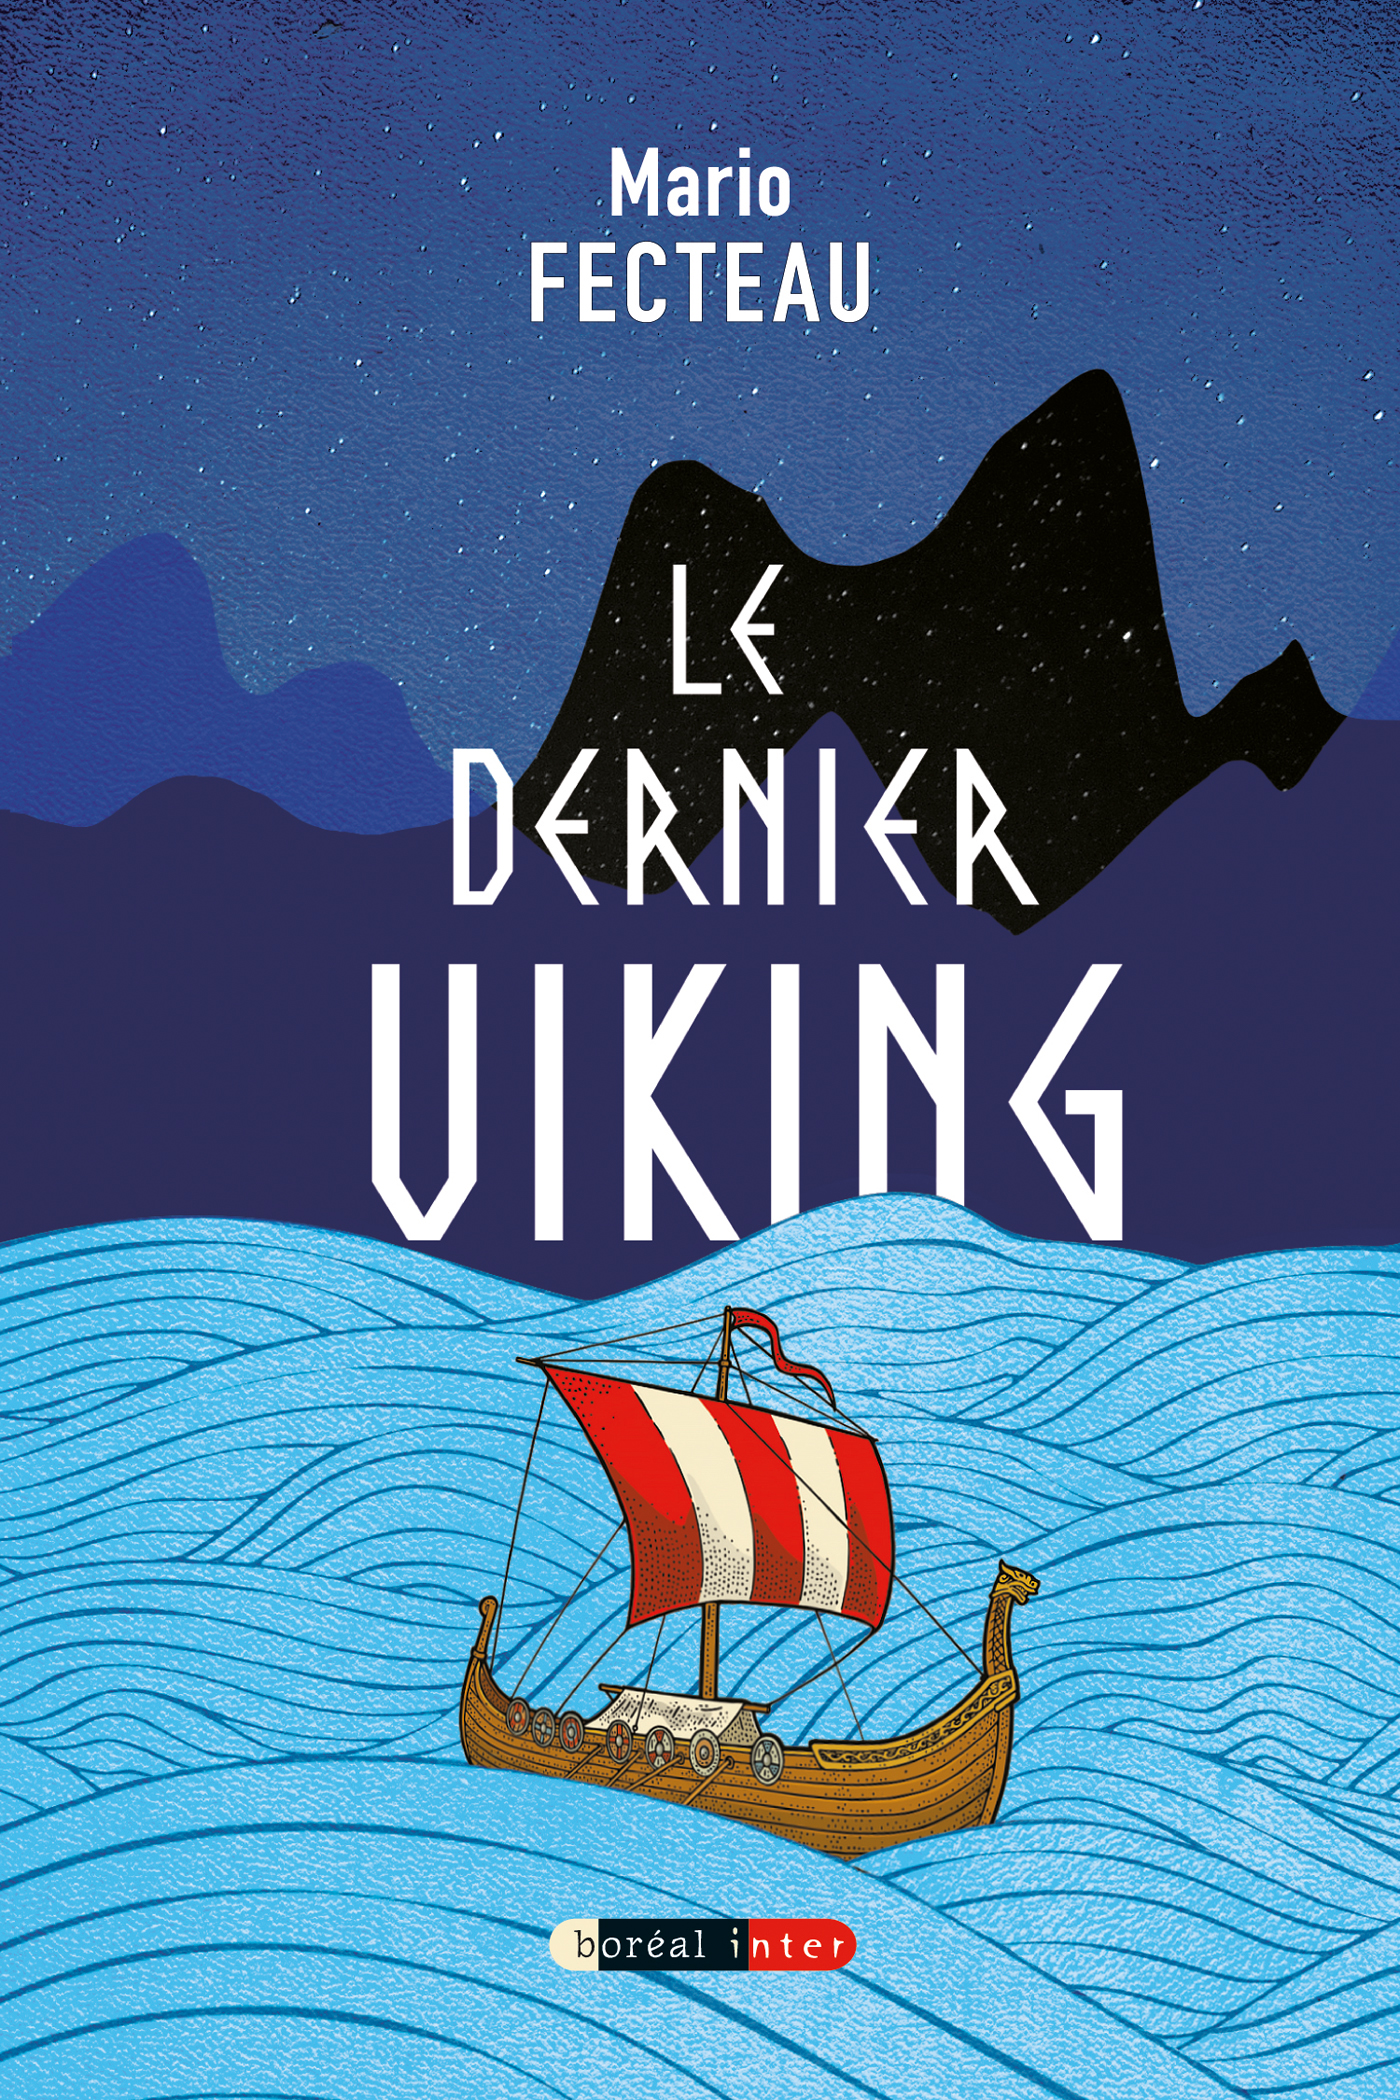 Book cover of DERNIER VIKING